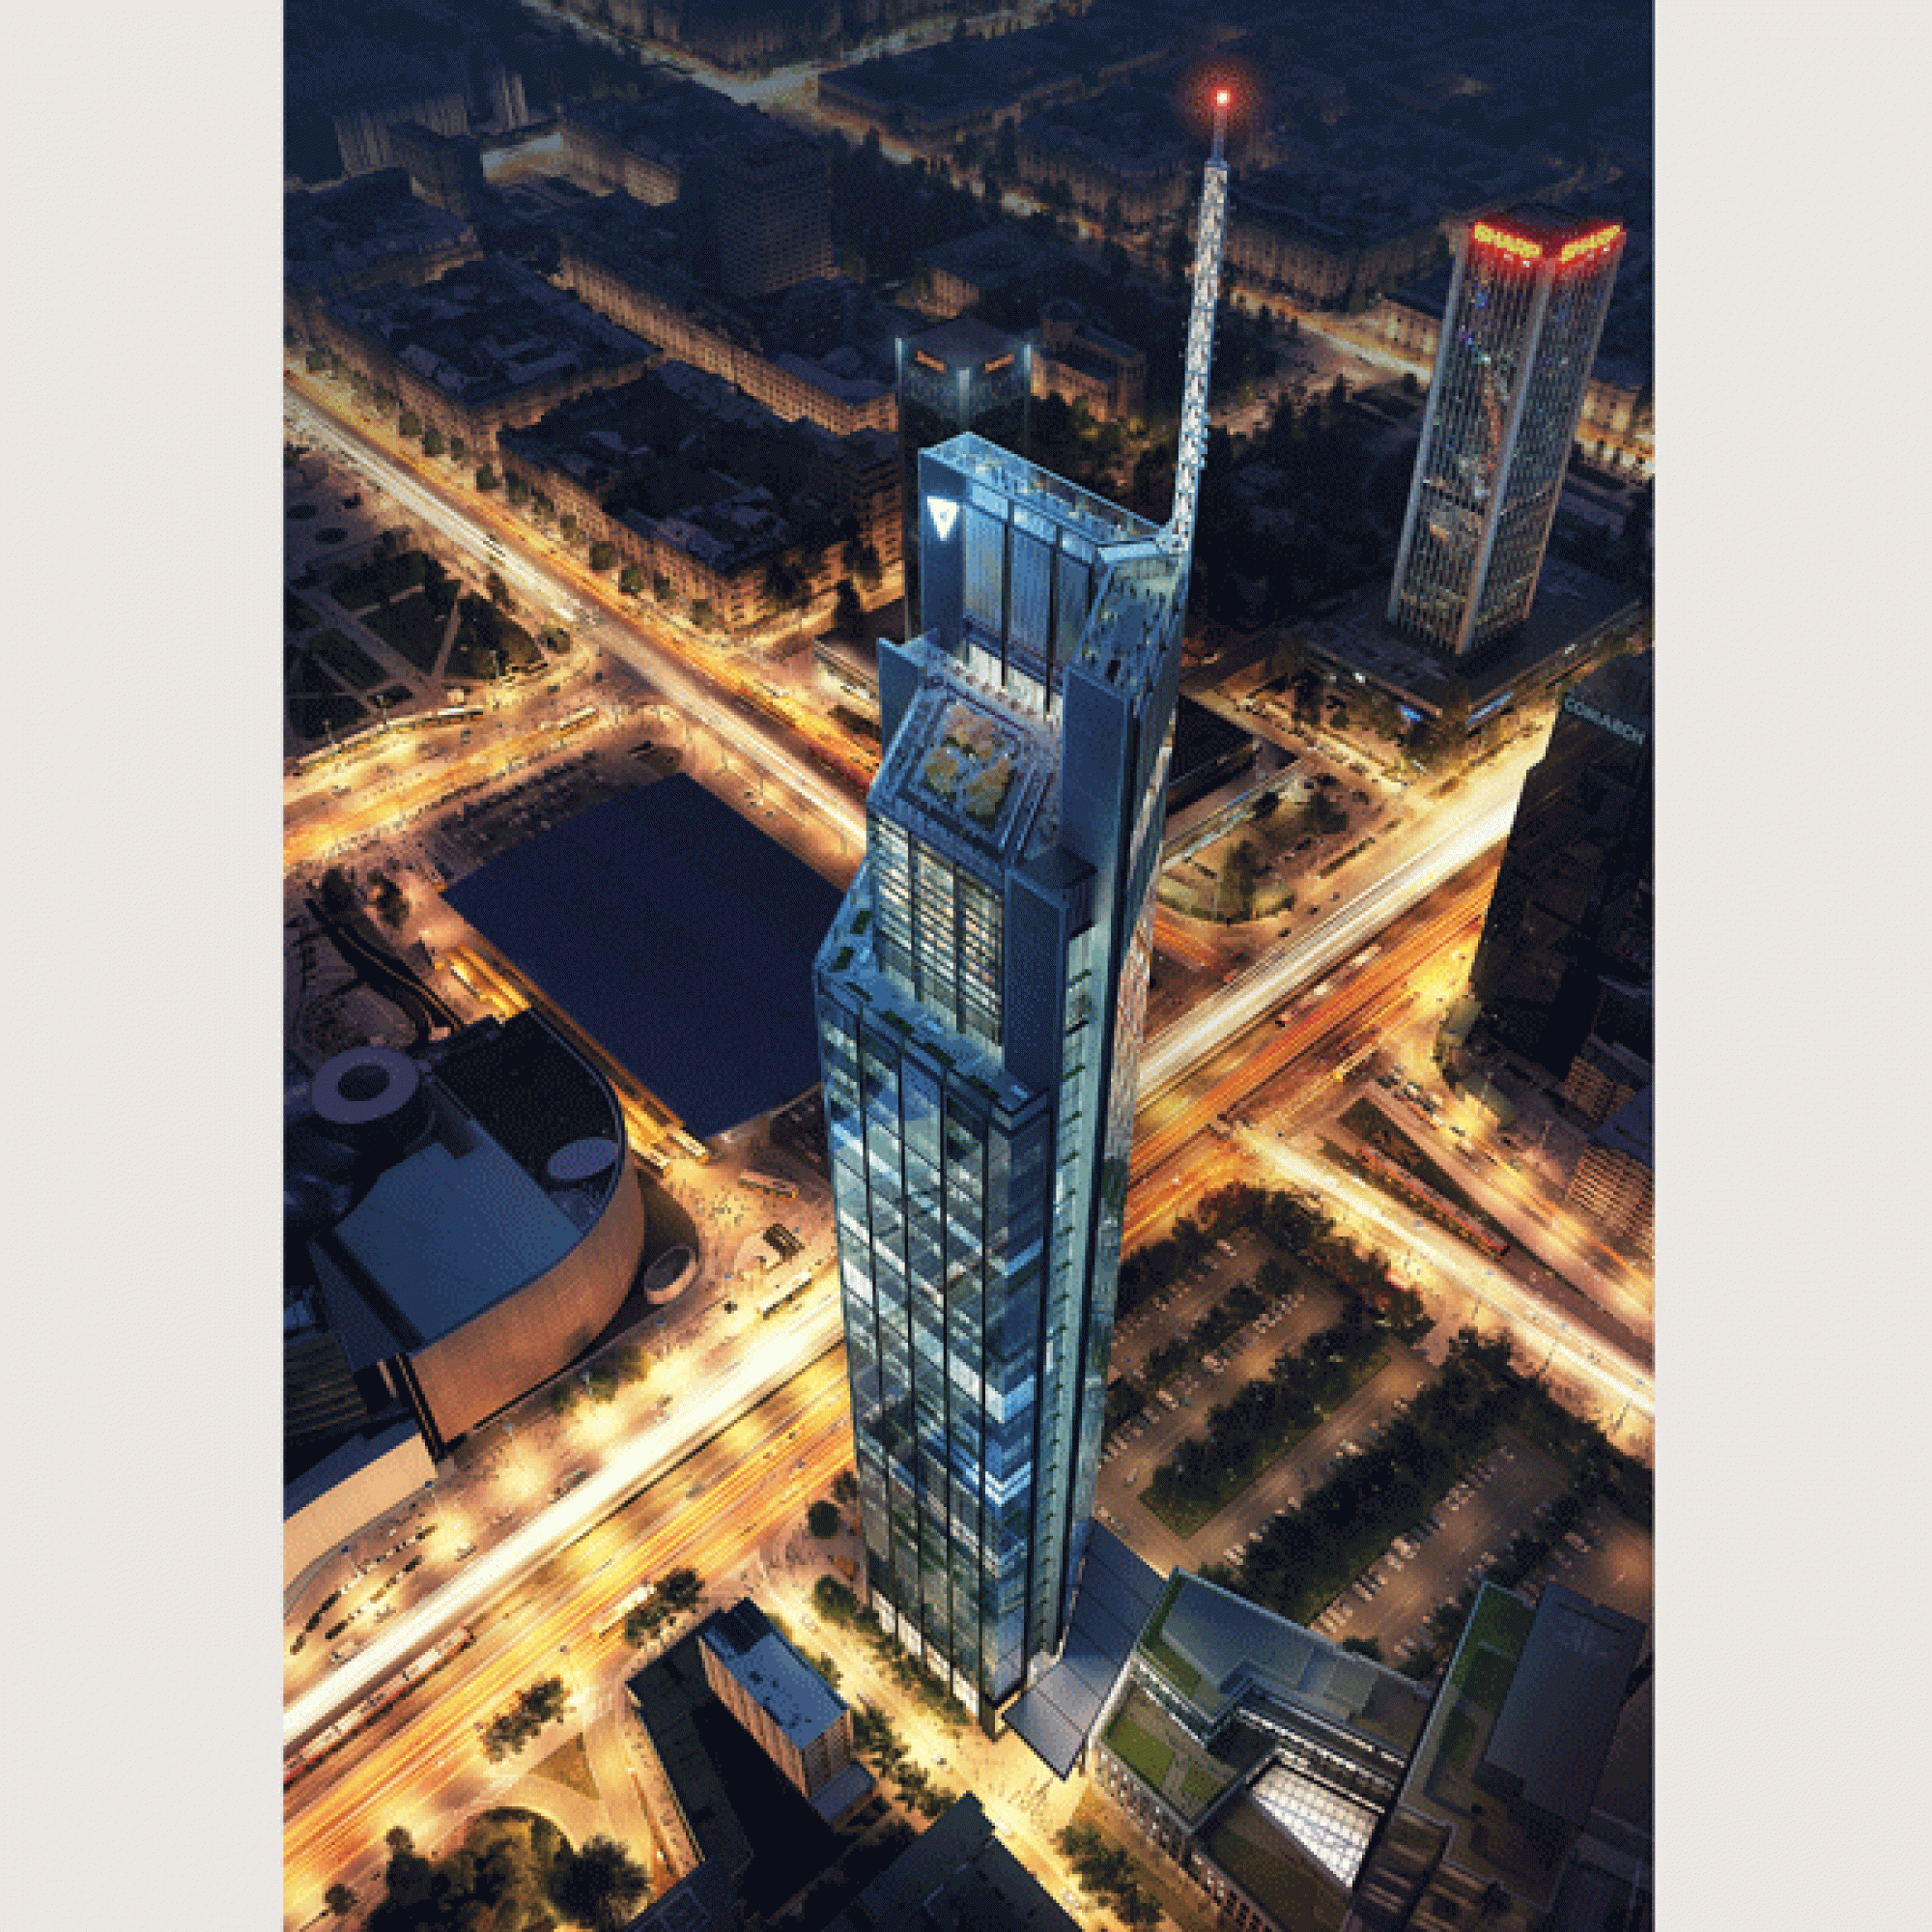 Der von Foster + Partner entworfene Varso-Tower bei Nacht.